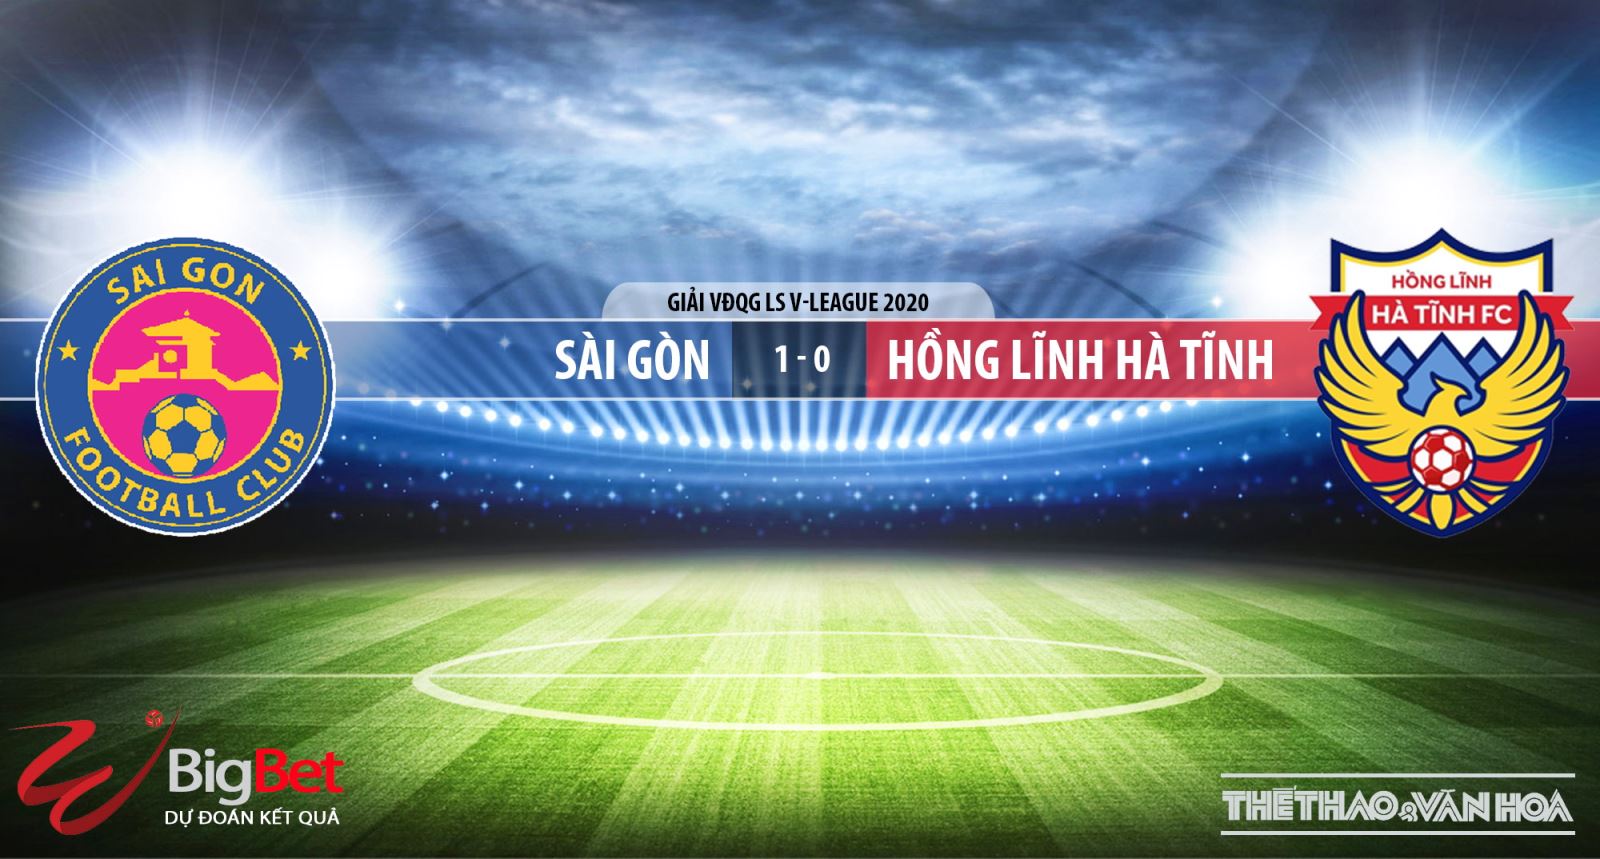 Sài Gòn - Hồng Lĩnh Hà Tĩnh, Sài Gòn đấu với Hà Tĩnh, trực tiếp bóng đá, kèo bóng đá, dự đoán bóng đá, V-League, Sài Gòn, Hà Tĩnh